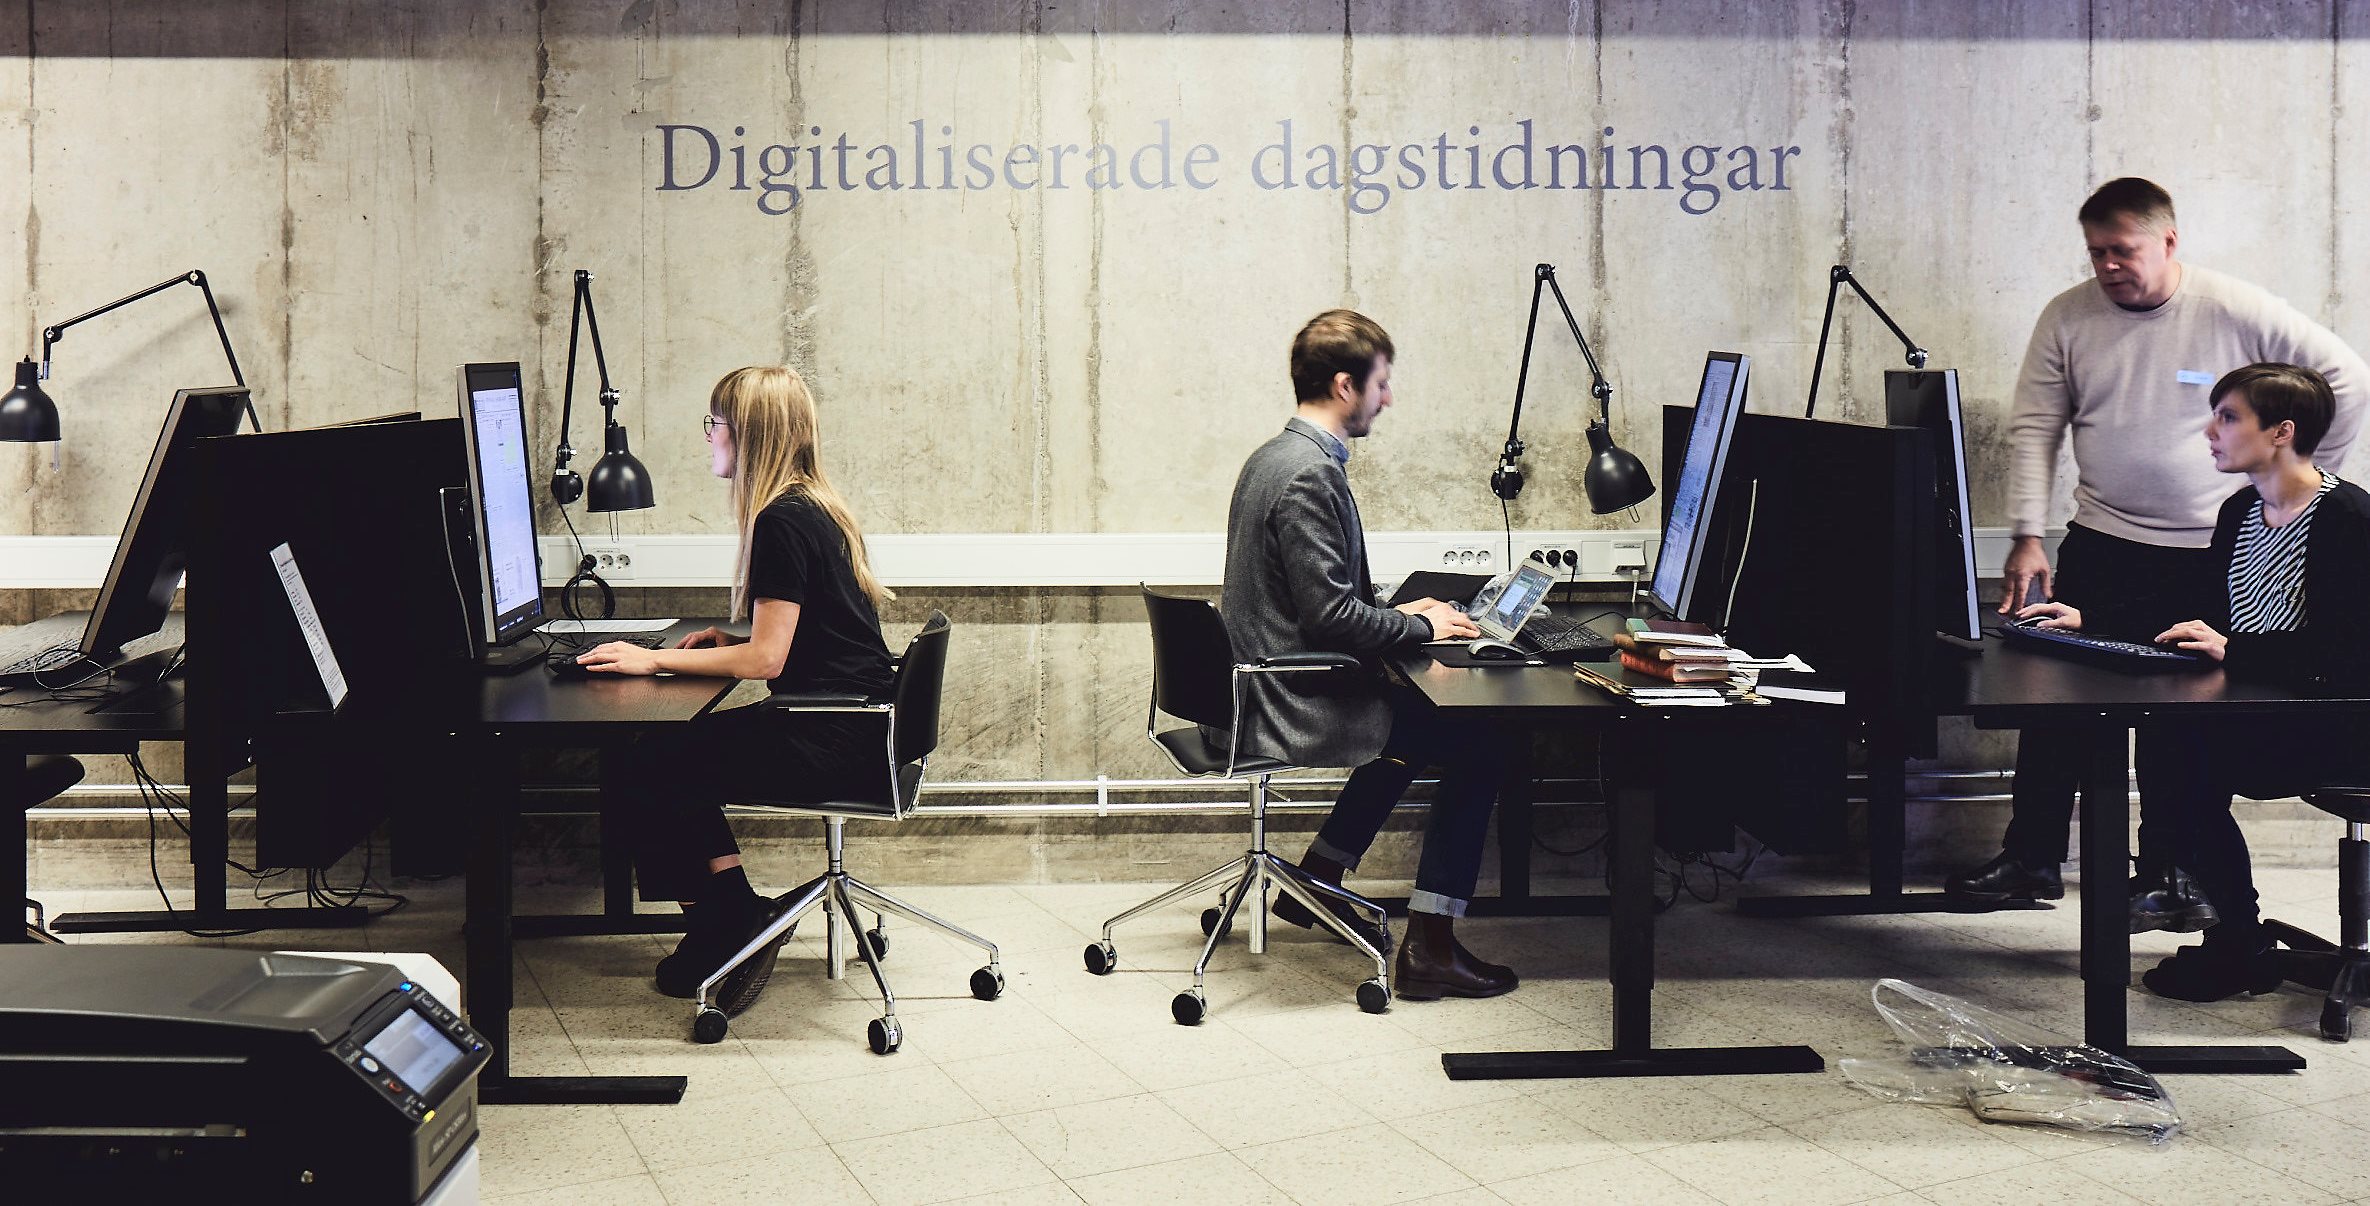 Besökare studerar digitala dagstidningar. Foto: Per & Per Fotograf AB